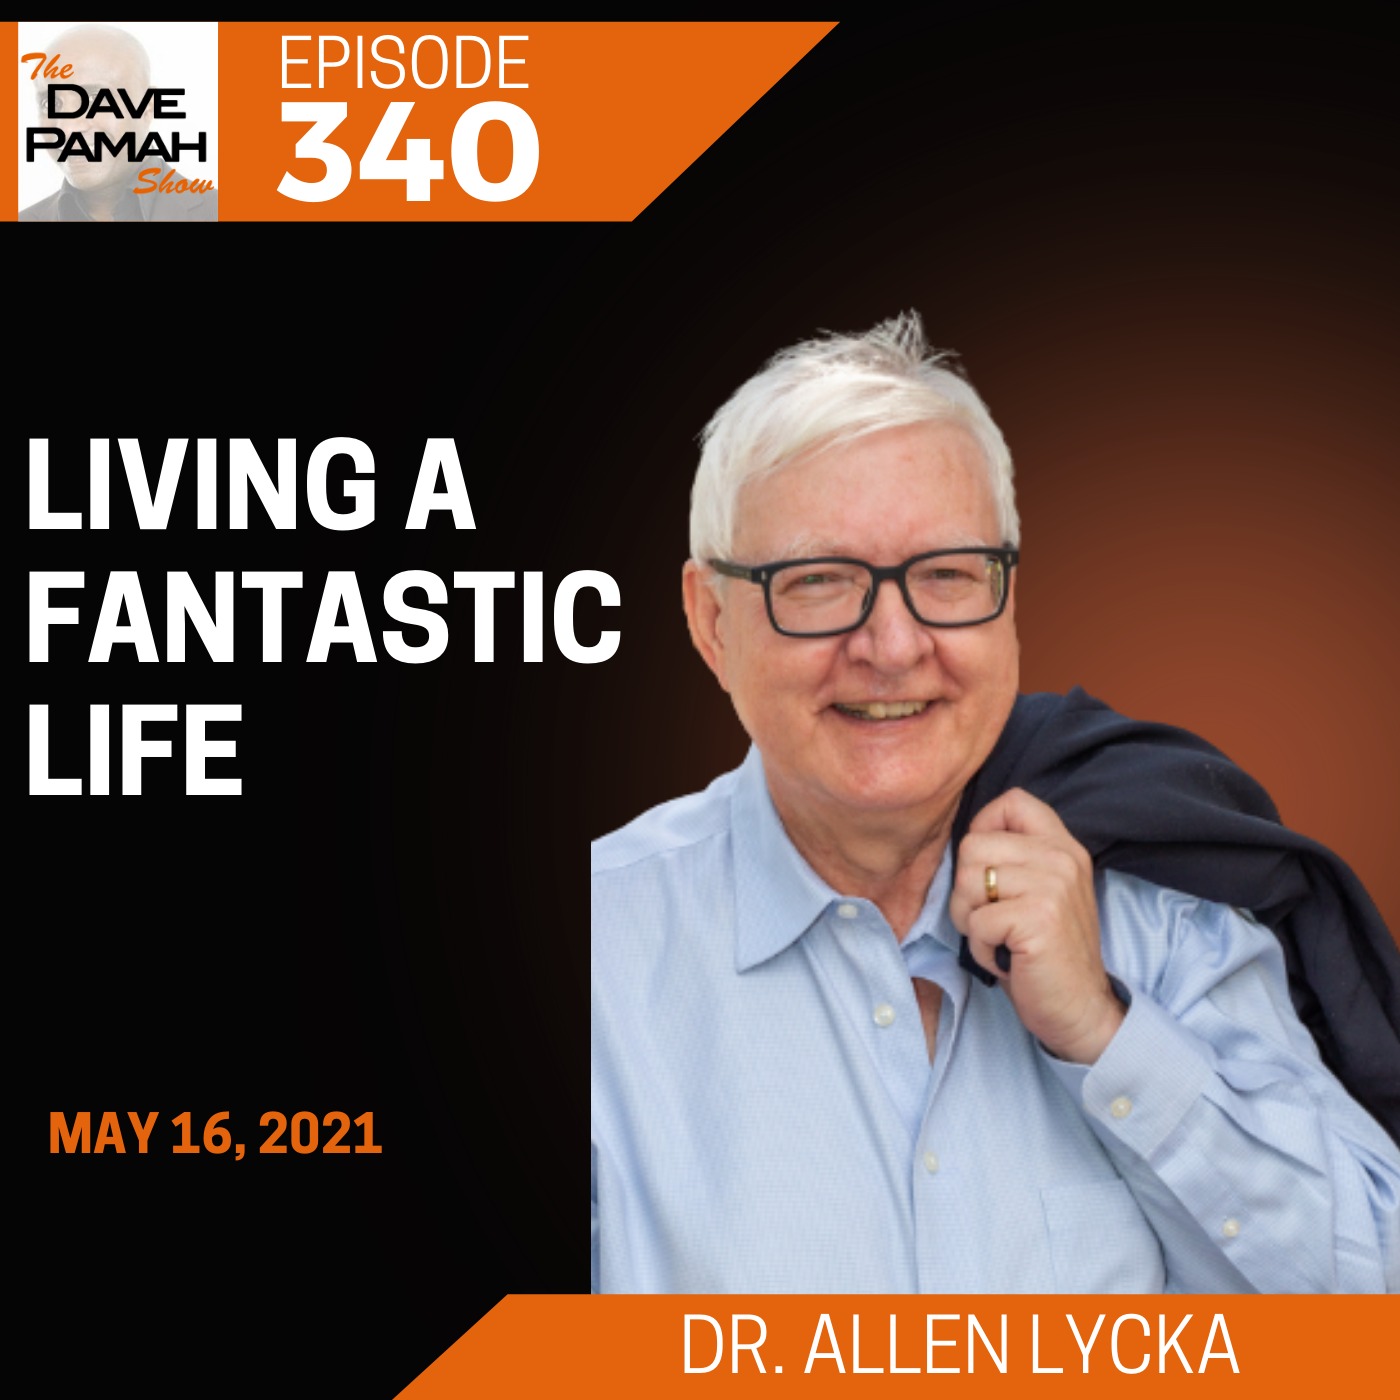 Living A Fantastic Life with Dr. Allen Lycka